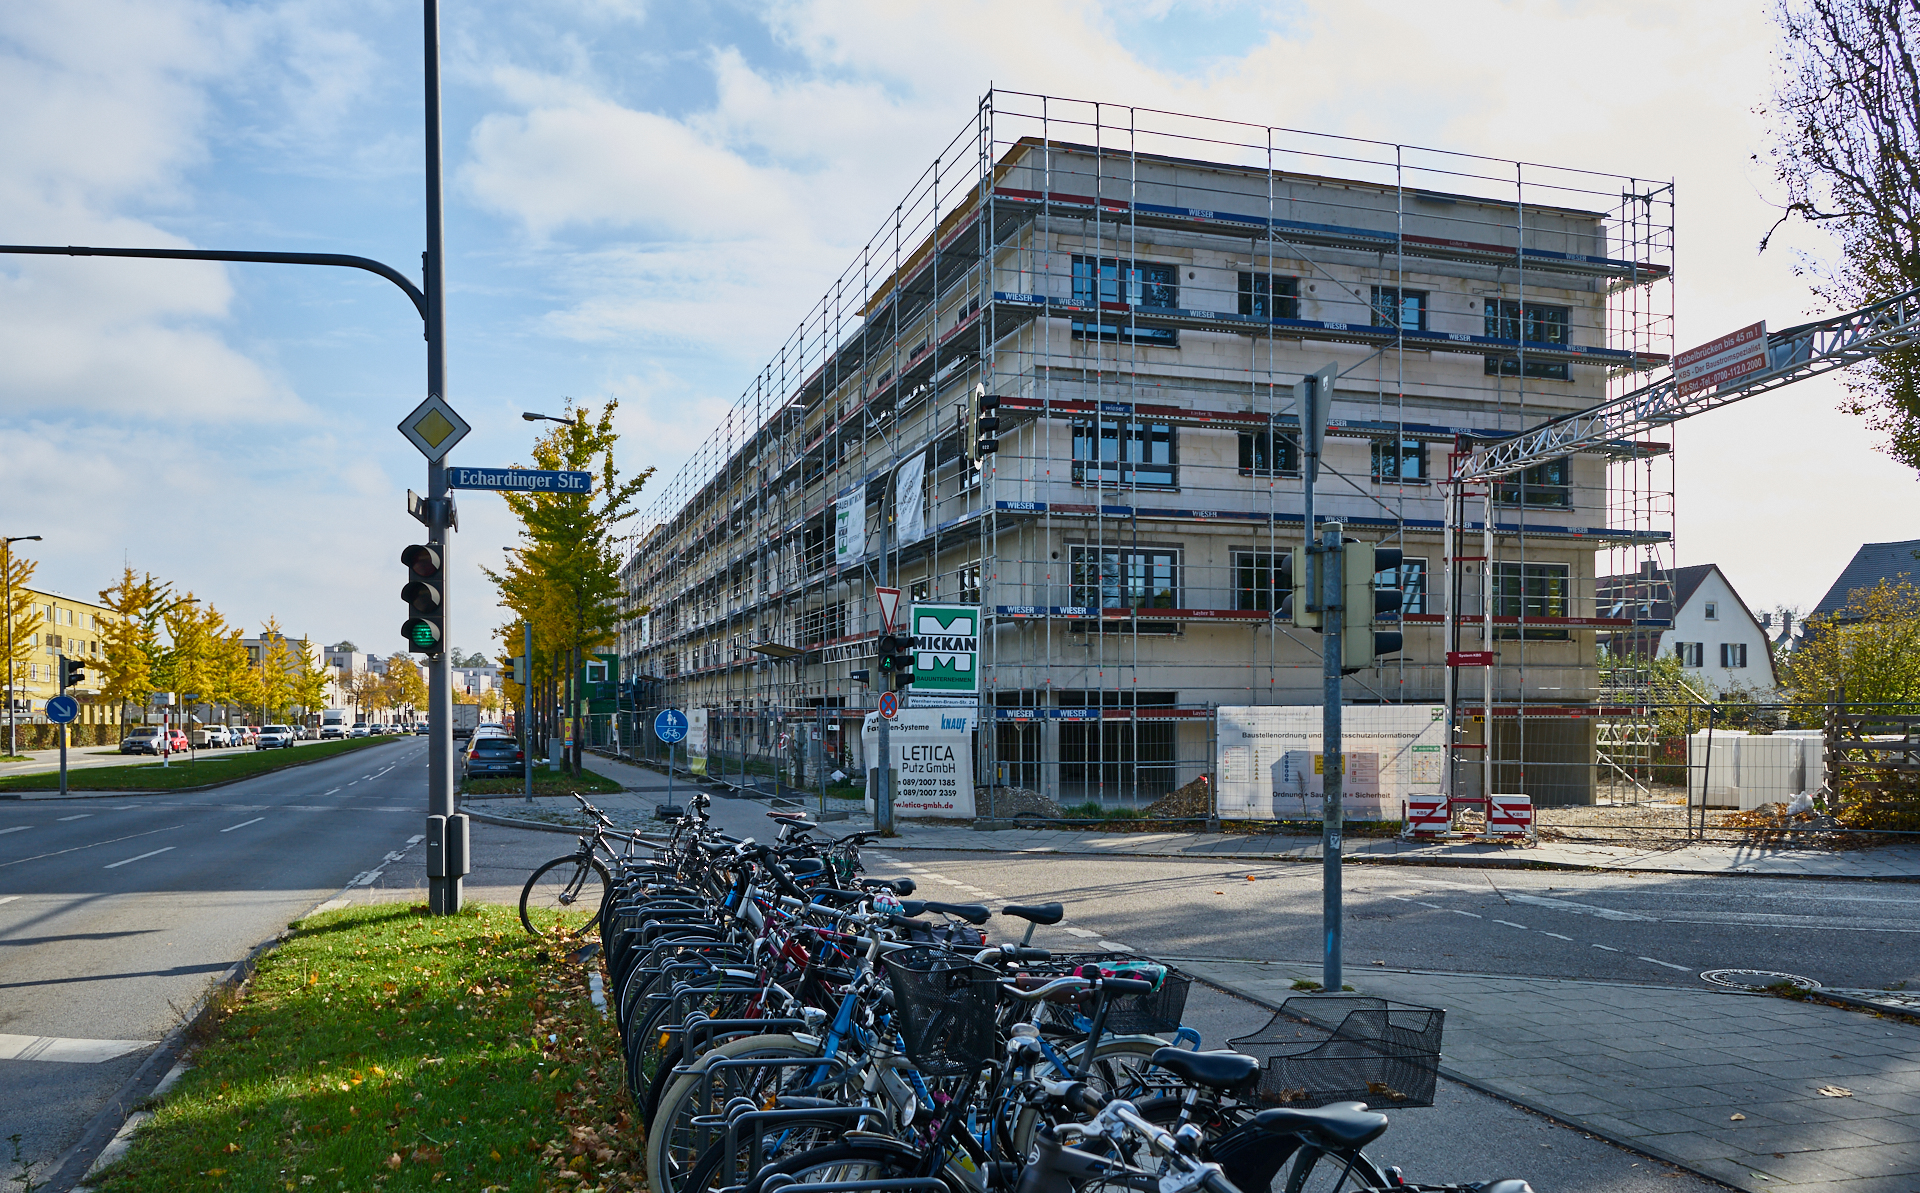 26.10.2018 - Baustelle Maikäfersiedlung in der Bad Schachener Straße in Neuperlach